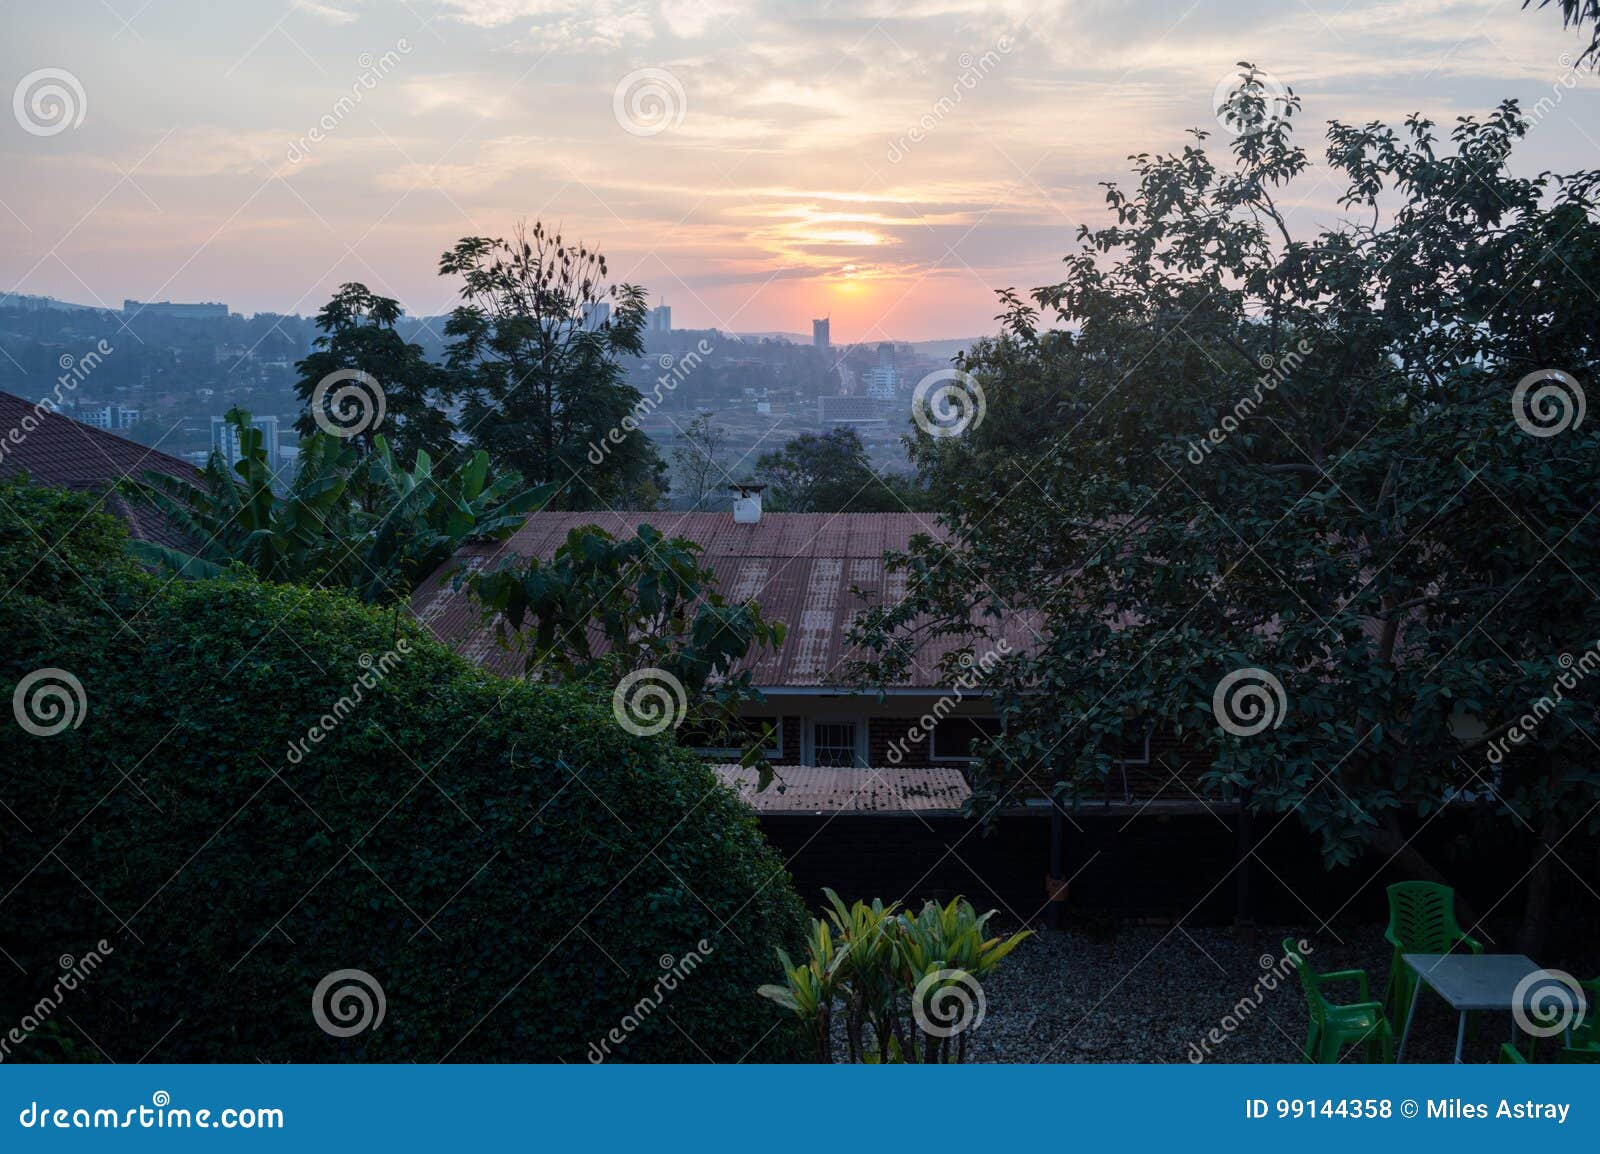 a sunset over kigali in rwanda